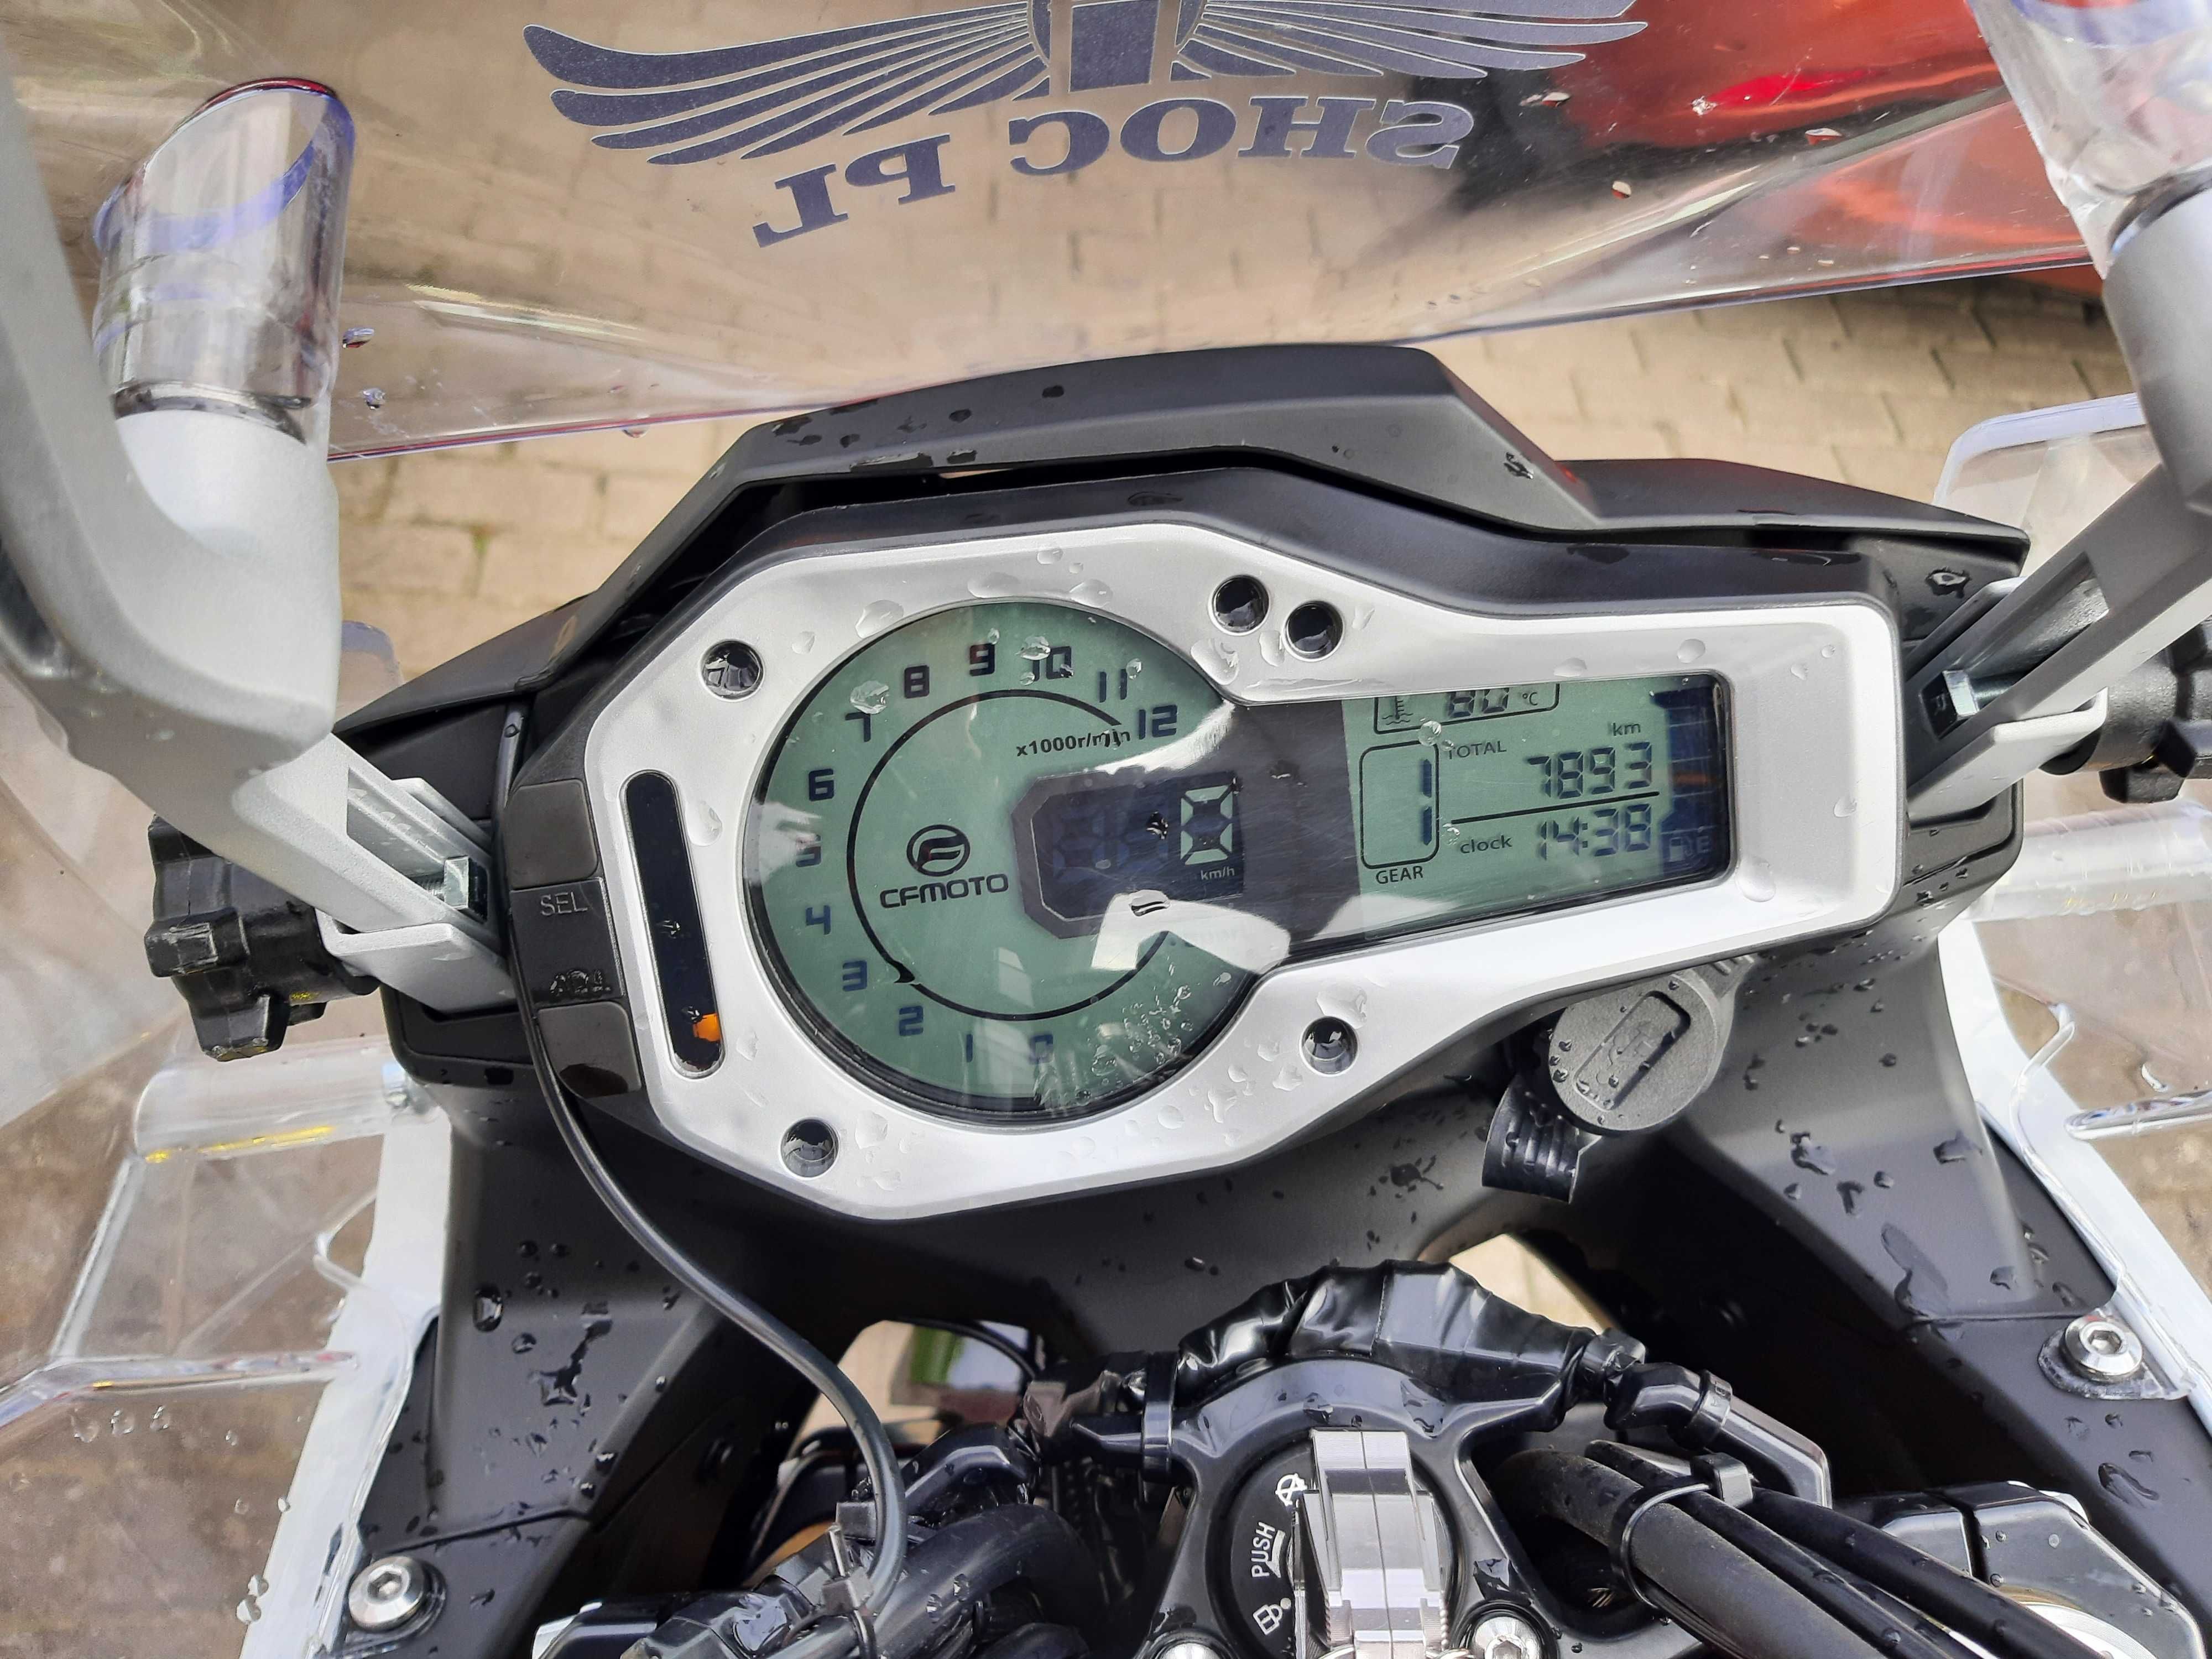 CFMoto 650 MT -prawie nowy motocykl CF Moto 650 MT